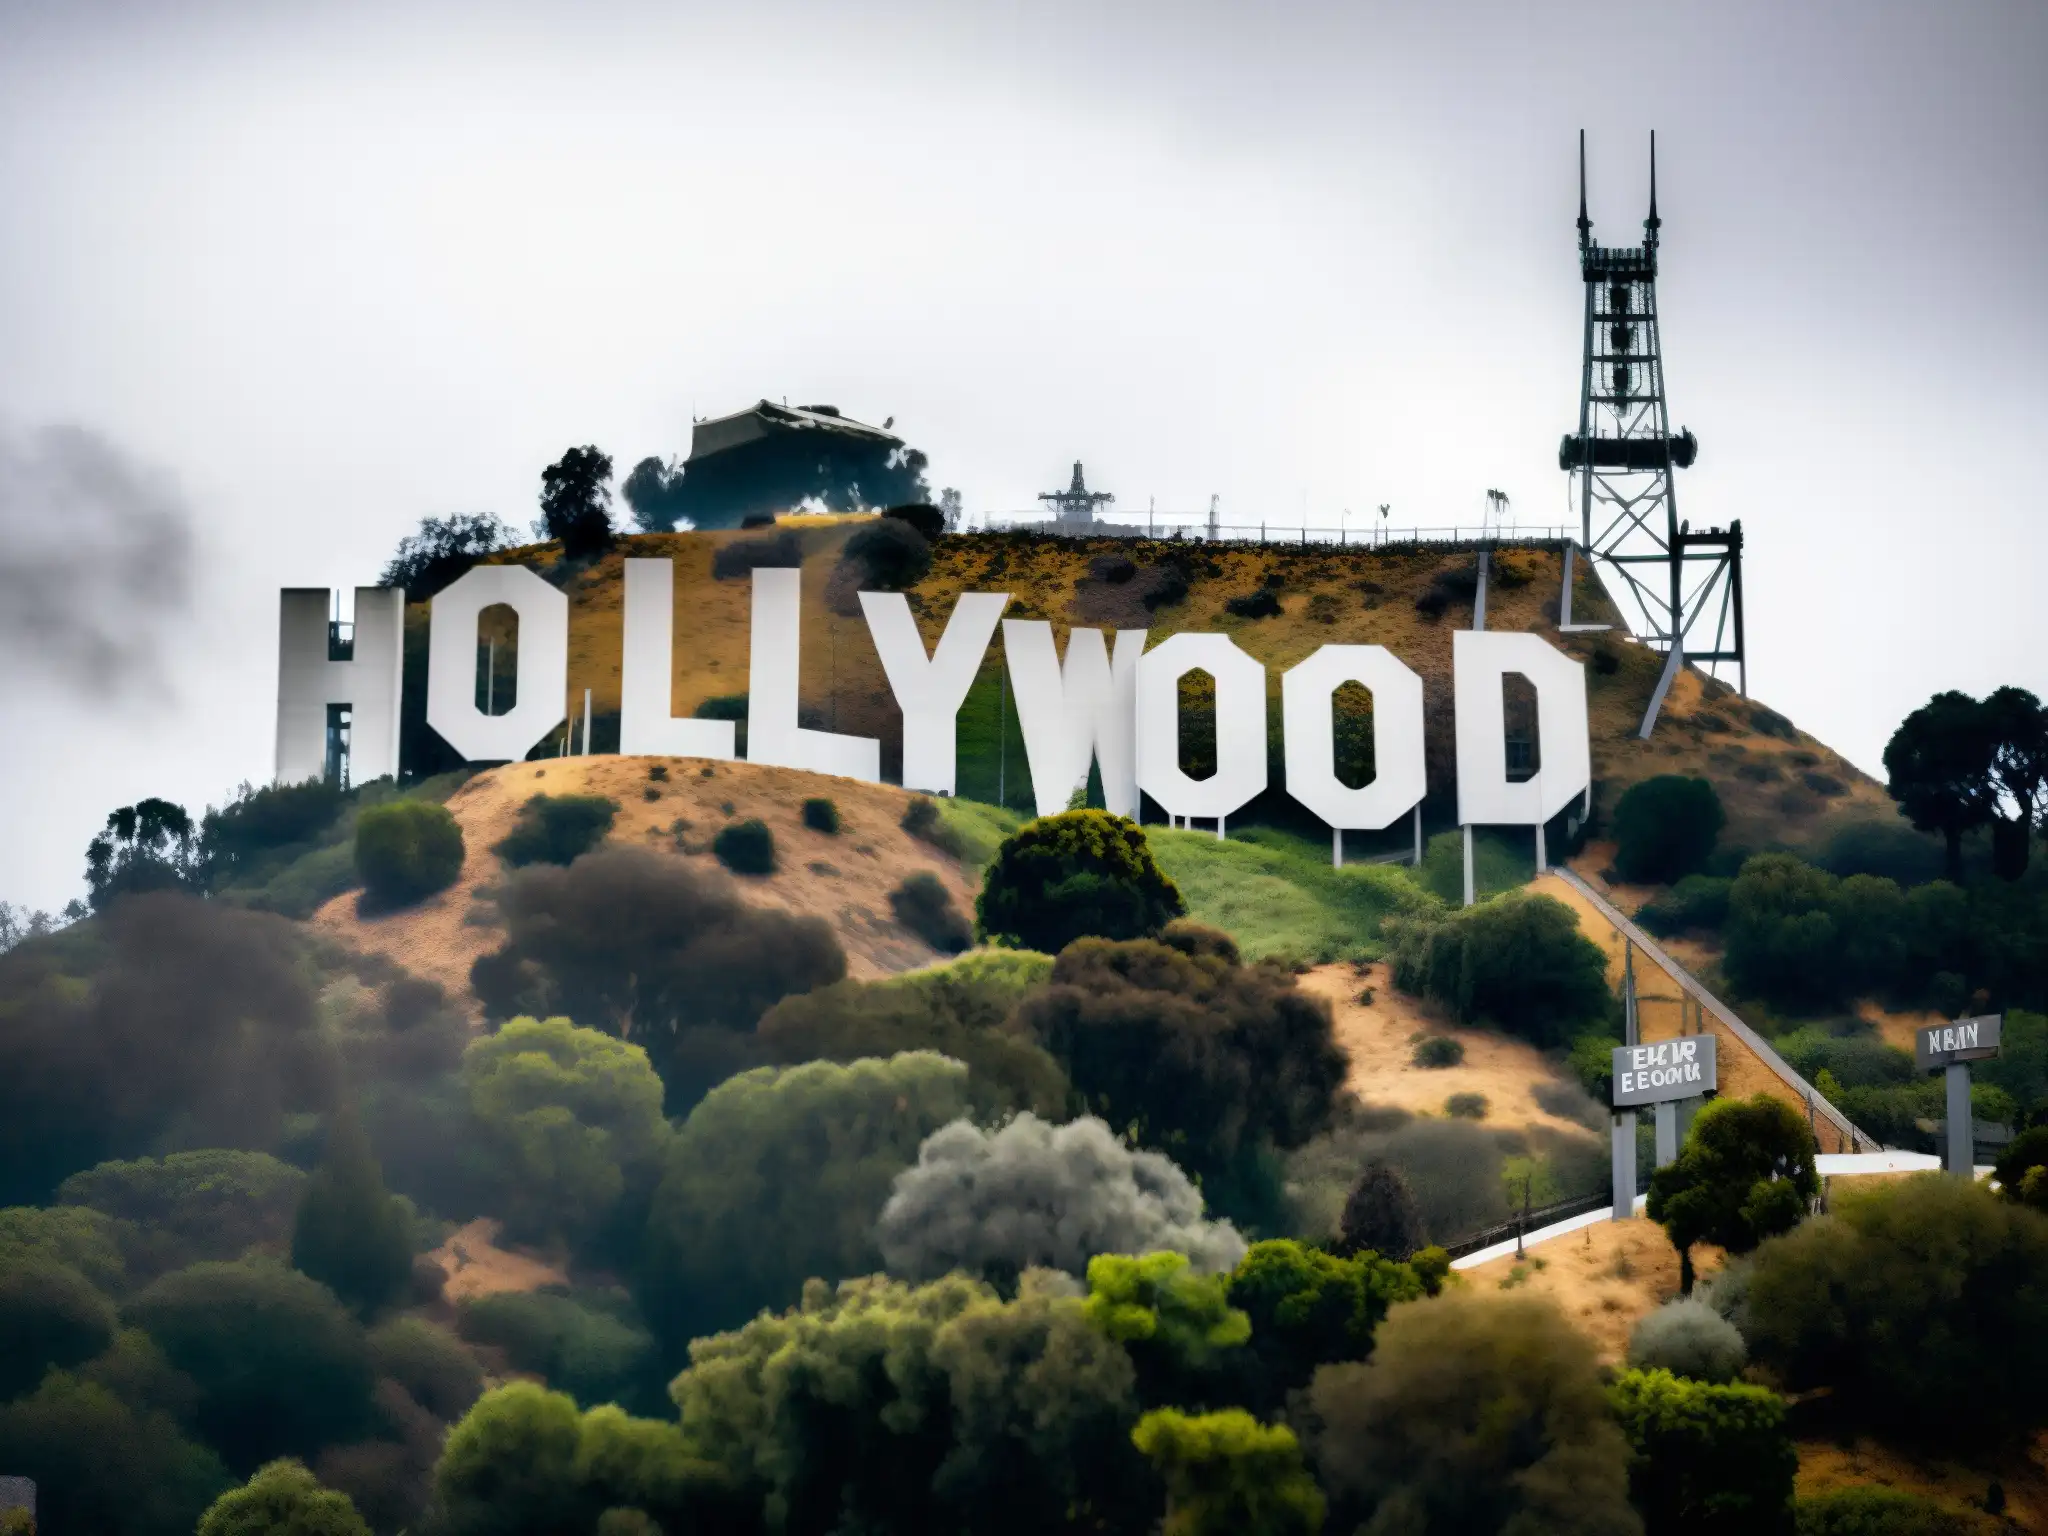 El imponente letrero de Hollywood emerge entre la niebla, evocando leyendas urbanas y misterio